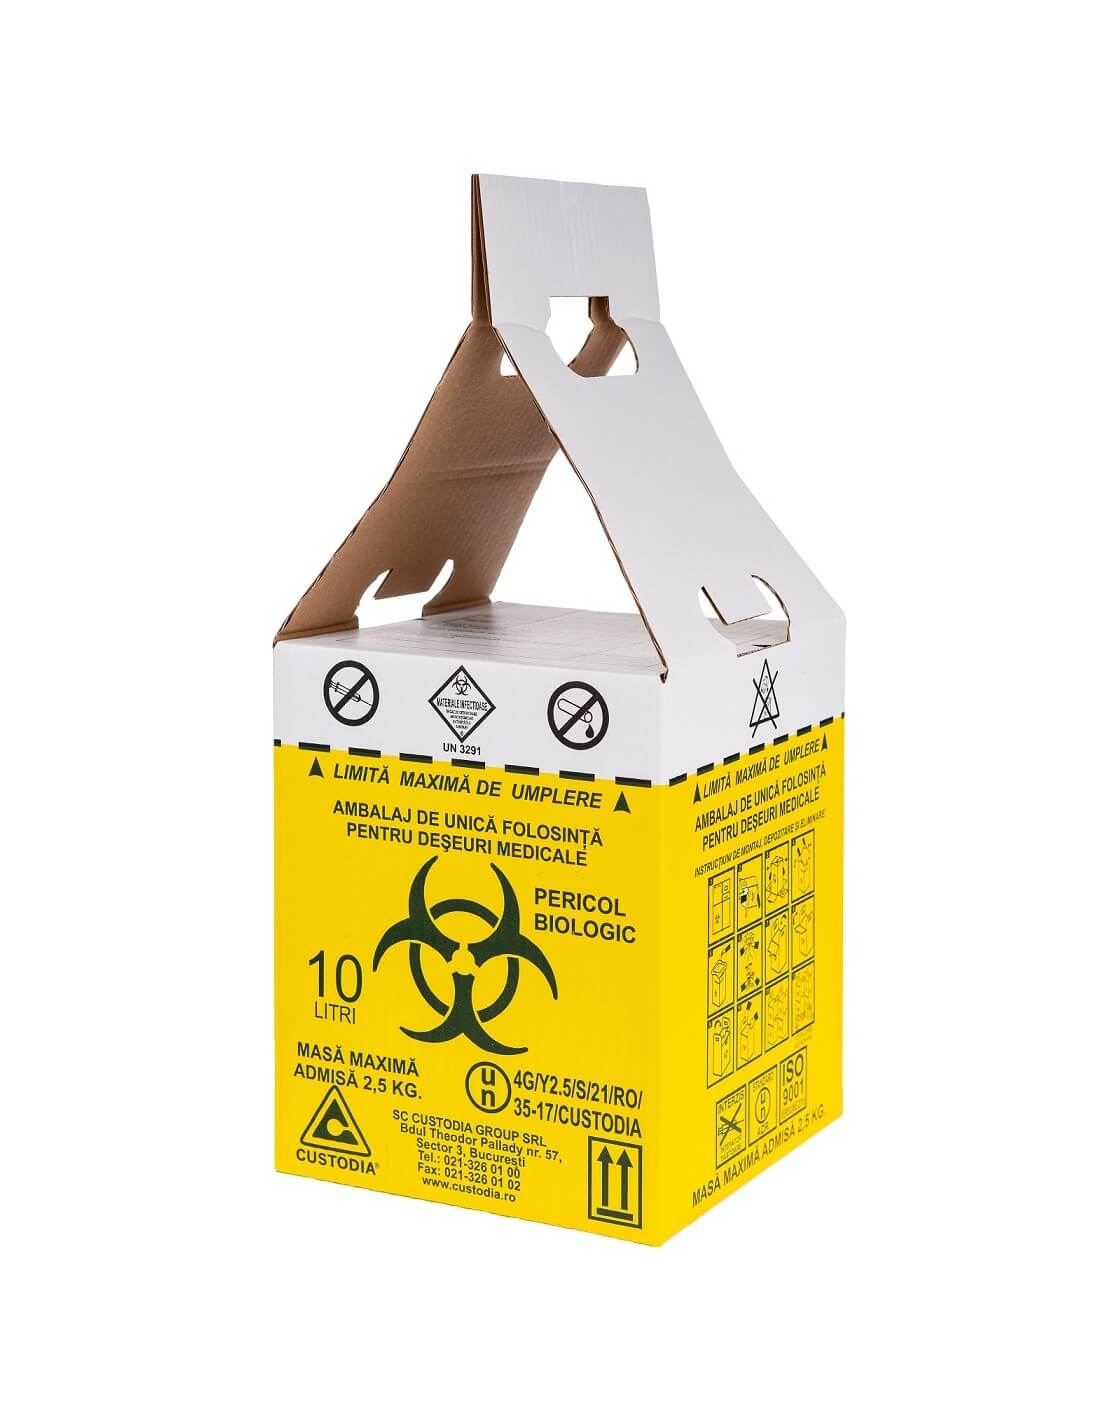 Cutii carton pentru deseuri medicale infectioase cu saci inclusi 10L 1